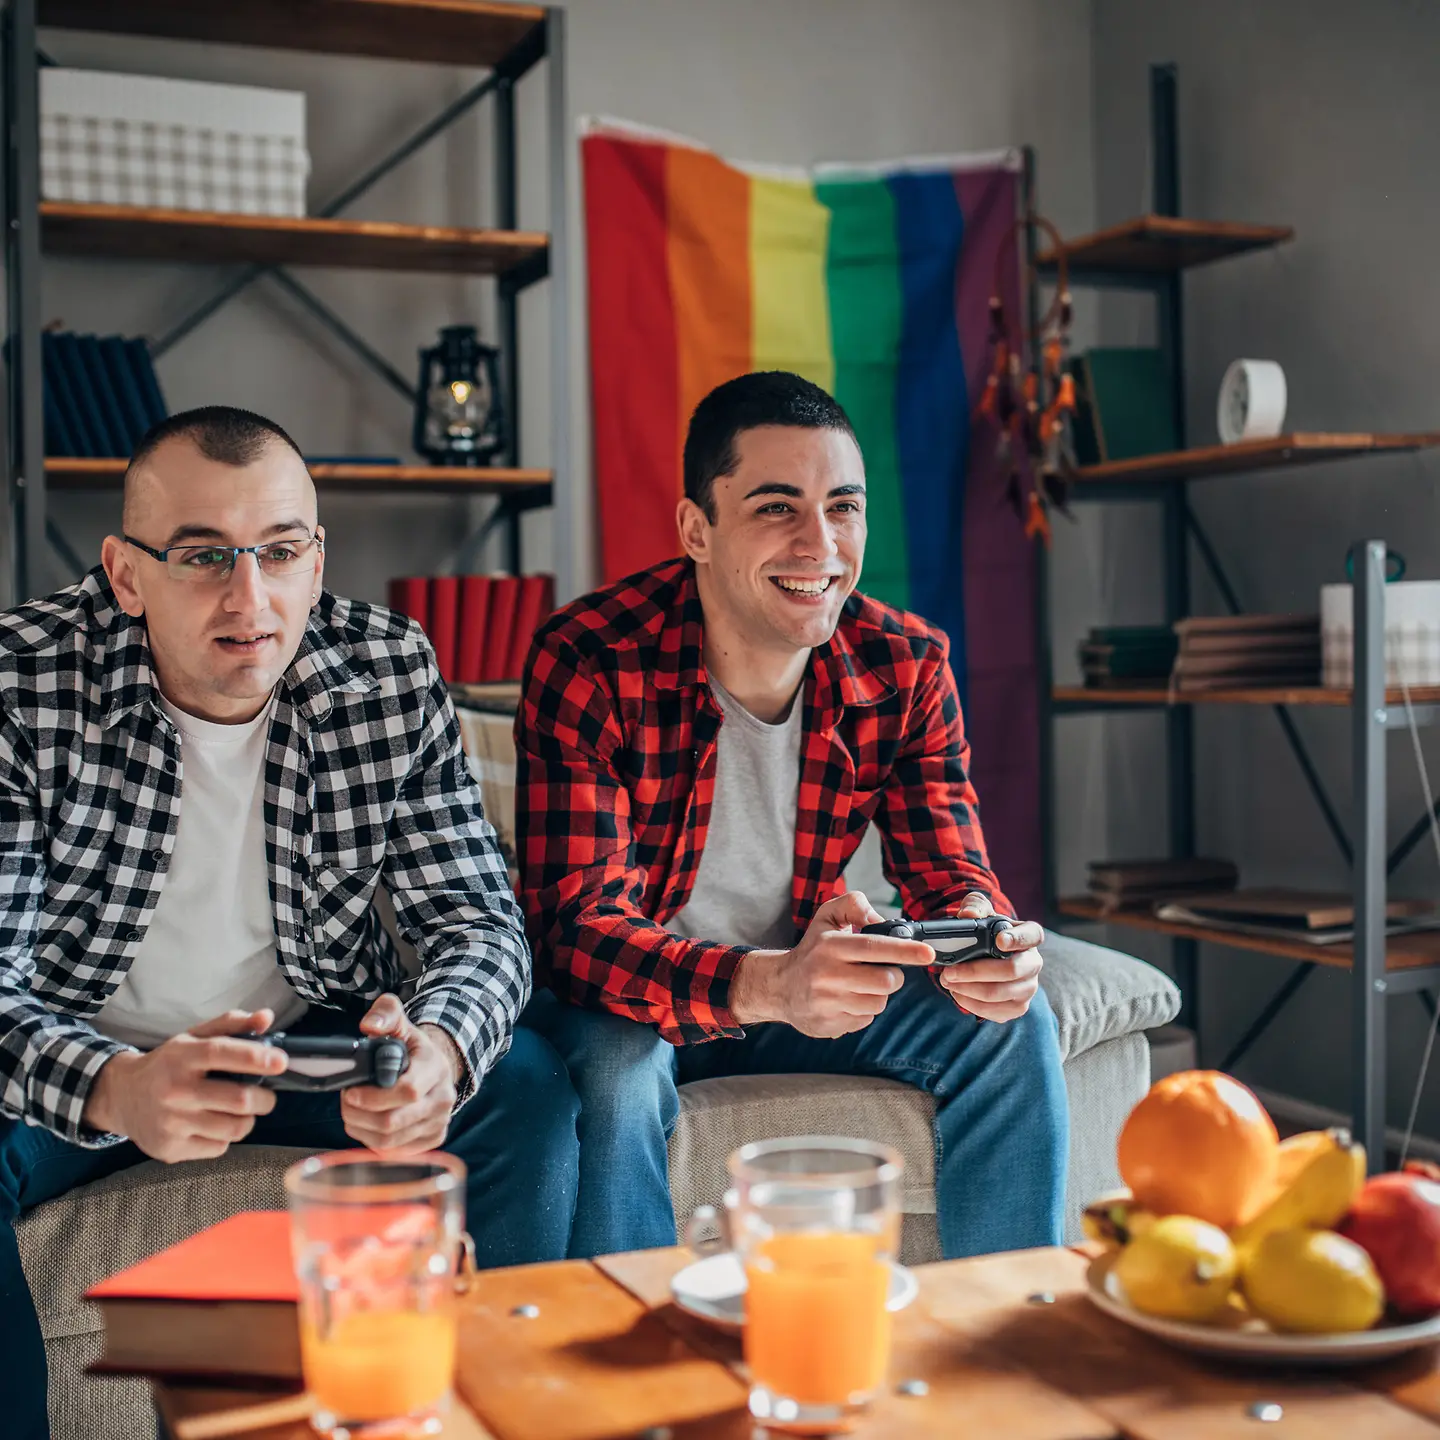 Zwei Männer spielen ein Computerspiel und essen dabei Obst.